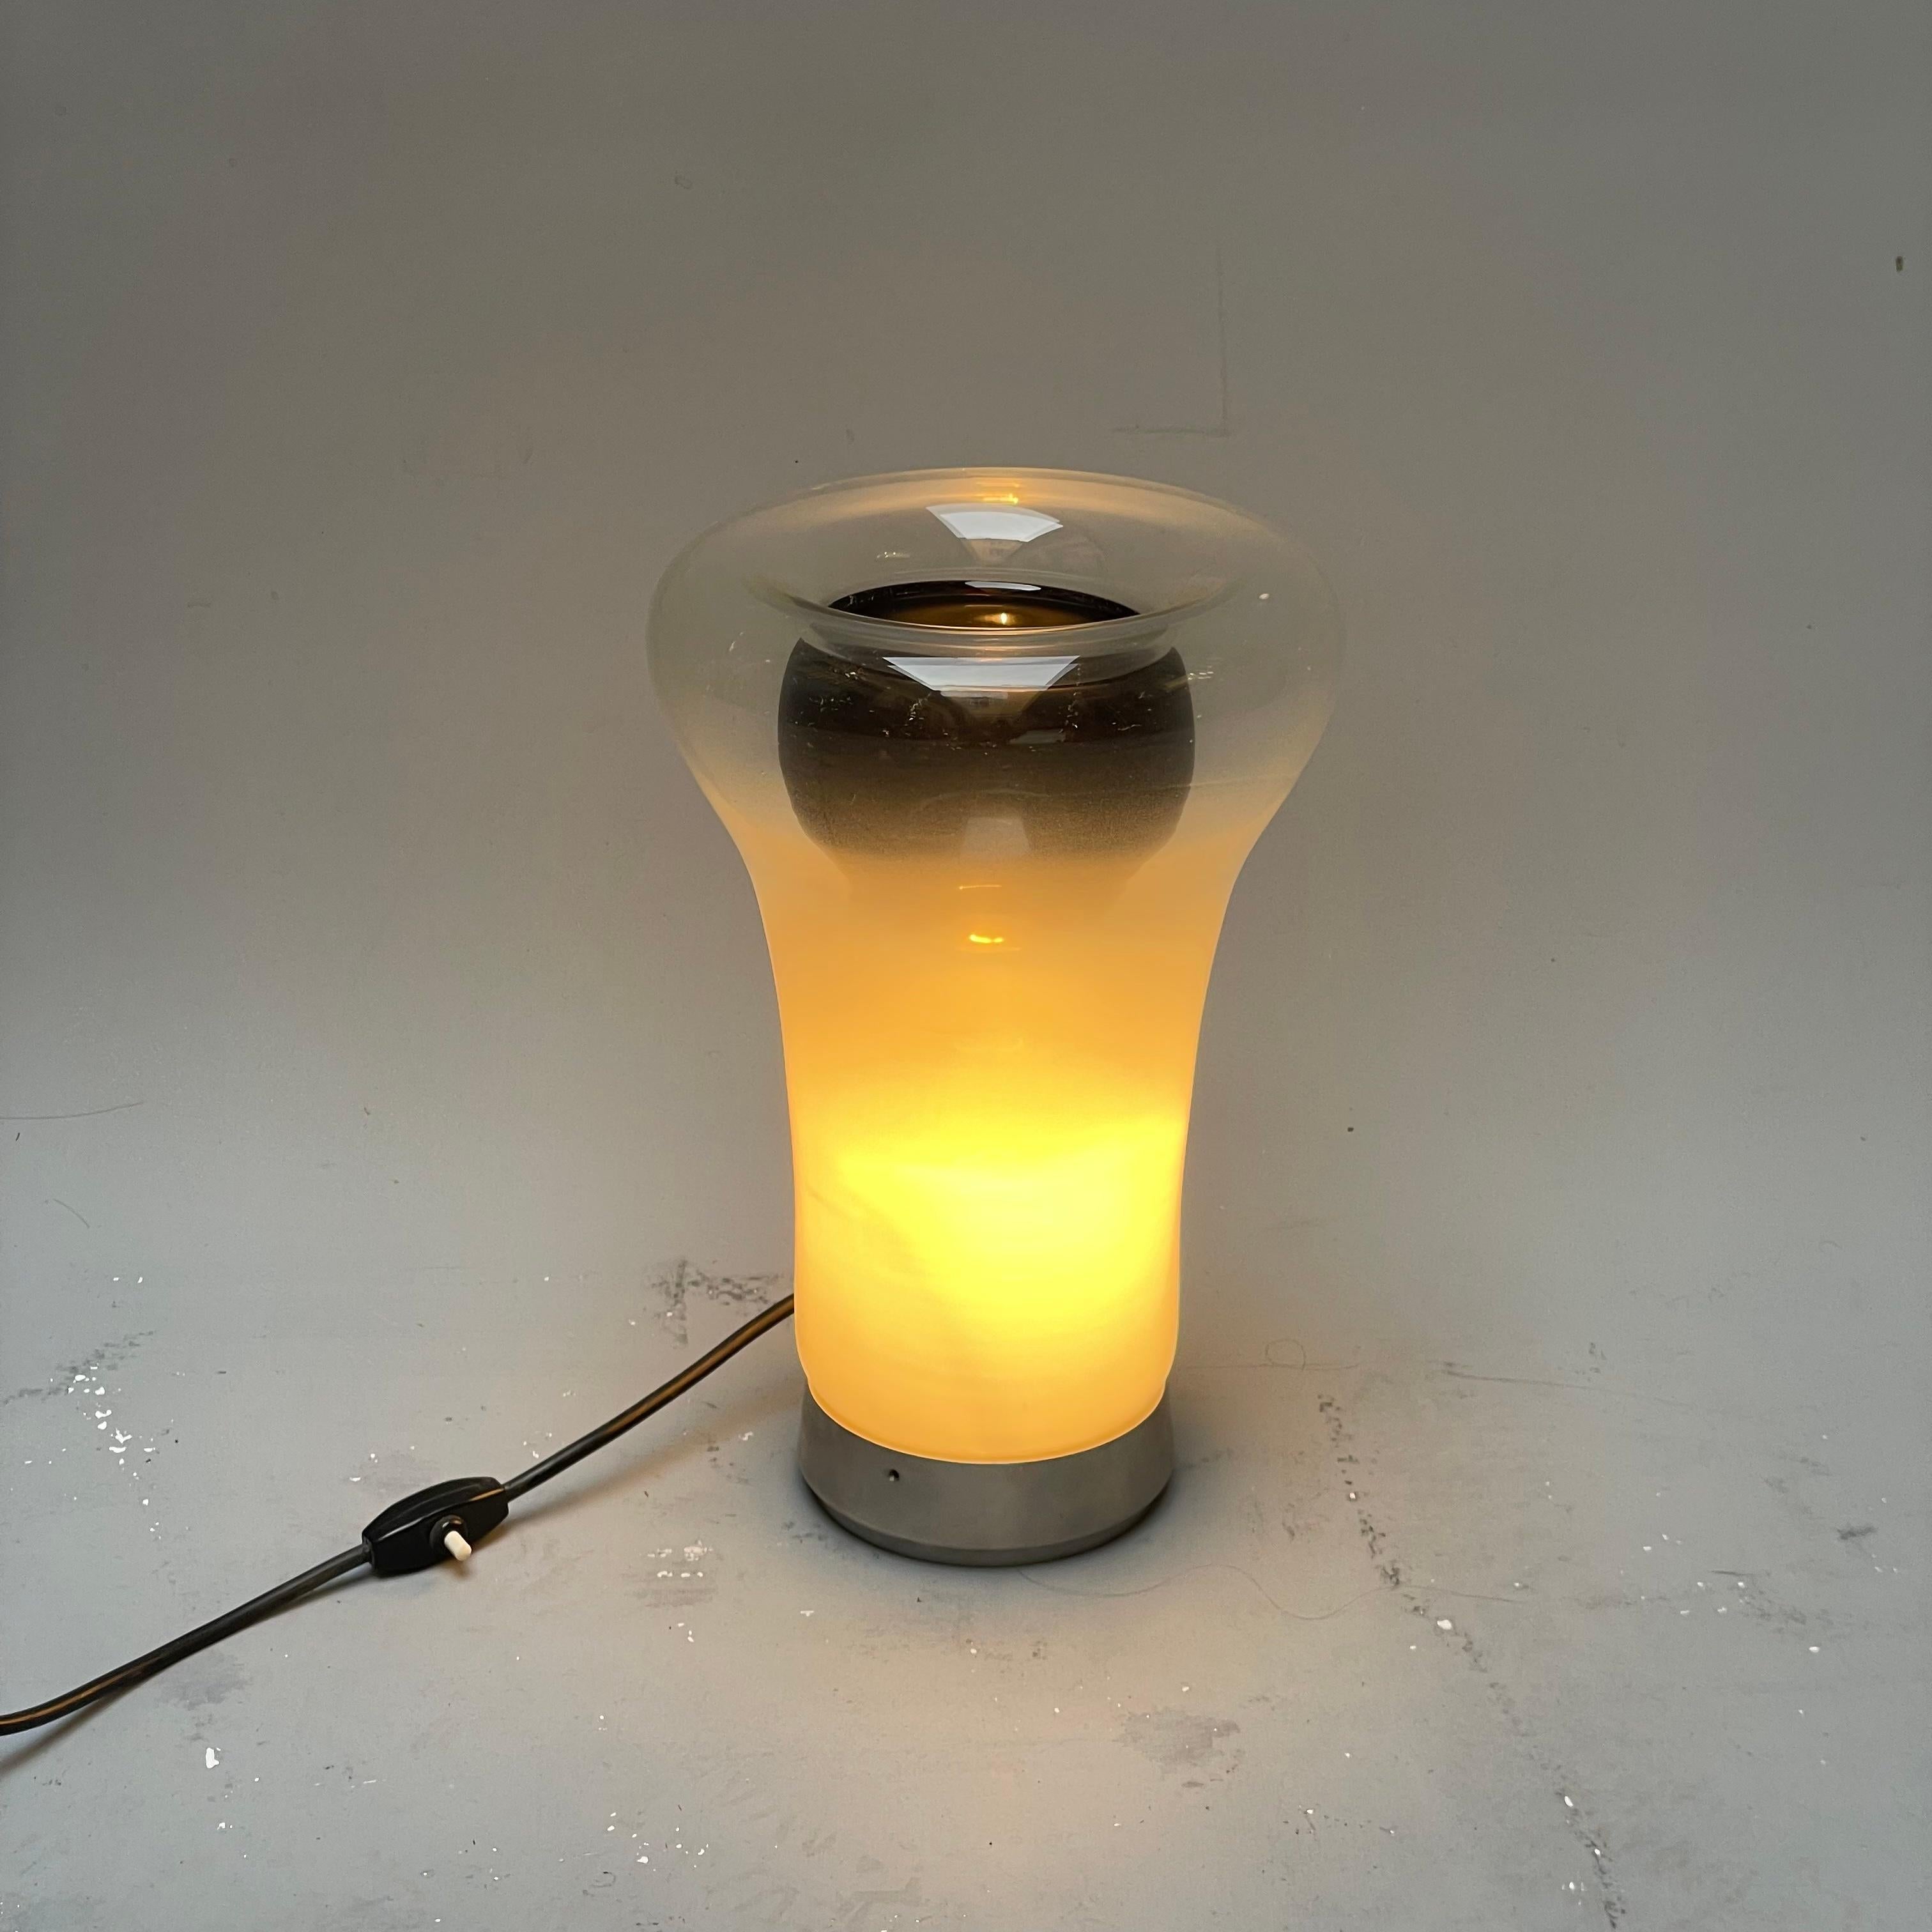 Conçue par Angelo Mangiarotti et produite par Artemide en 1967, cette lampe est composée d'un anneau en métal qui supporte un diffuseur en verre soufflé. Grâce à sa surface ombragée, il peut atténuer la lumière de la source lumineuse. La lampe est